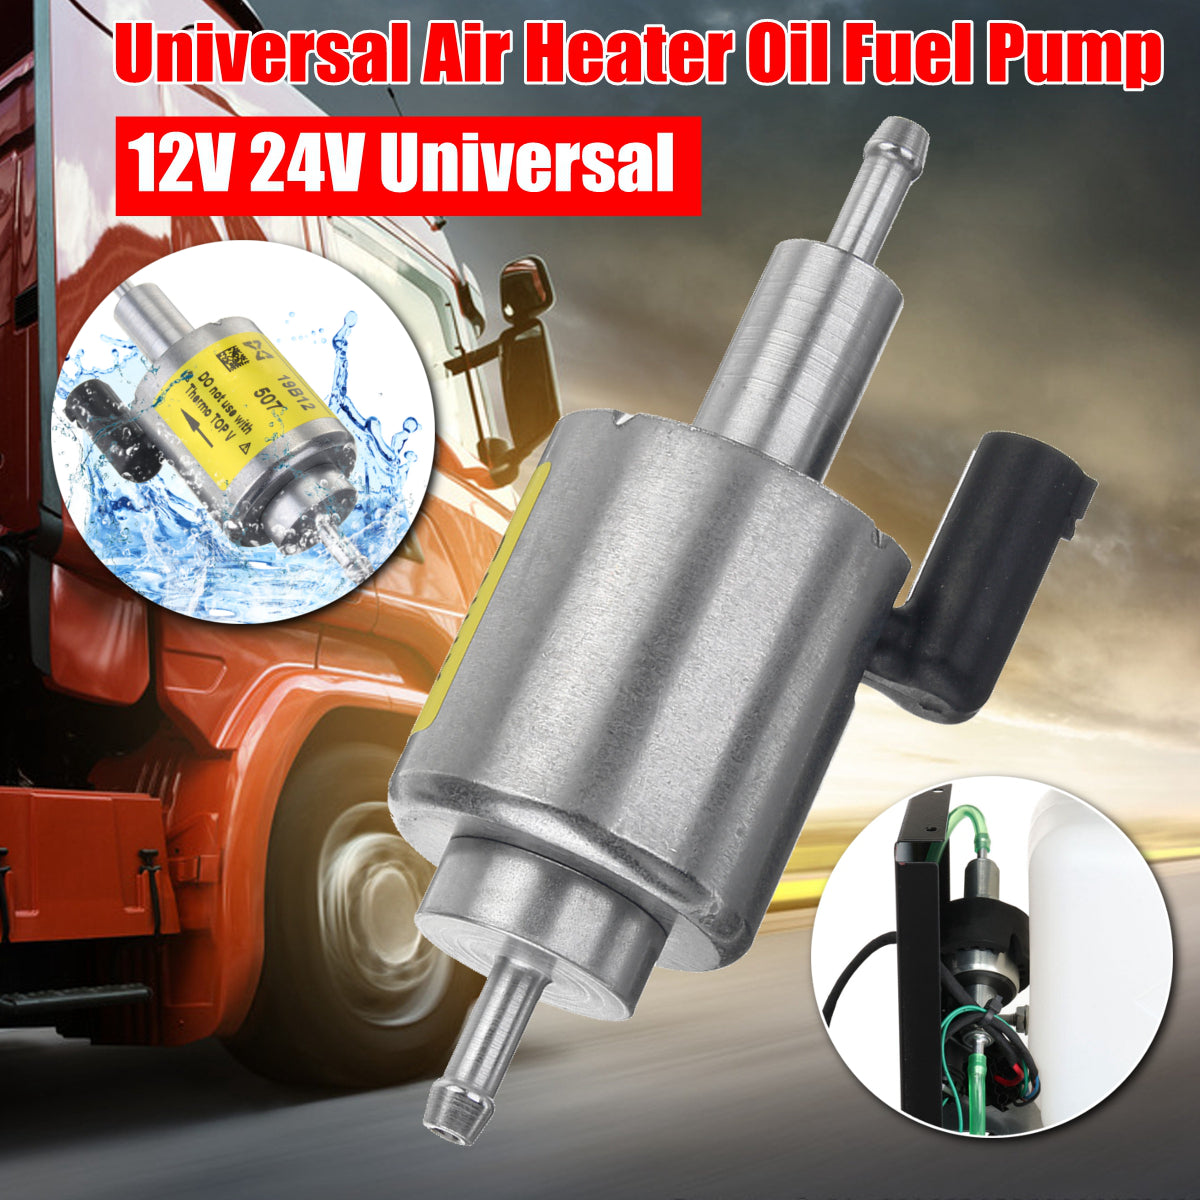 A65-Car-Air-Heater-Oil-Fuel-Pump-scene